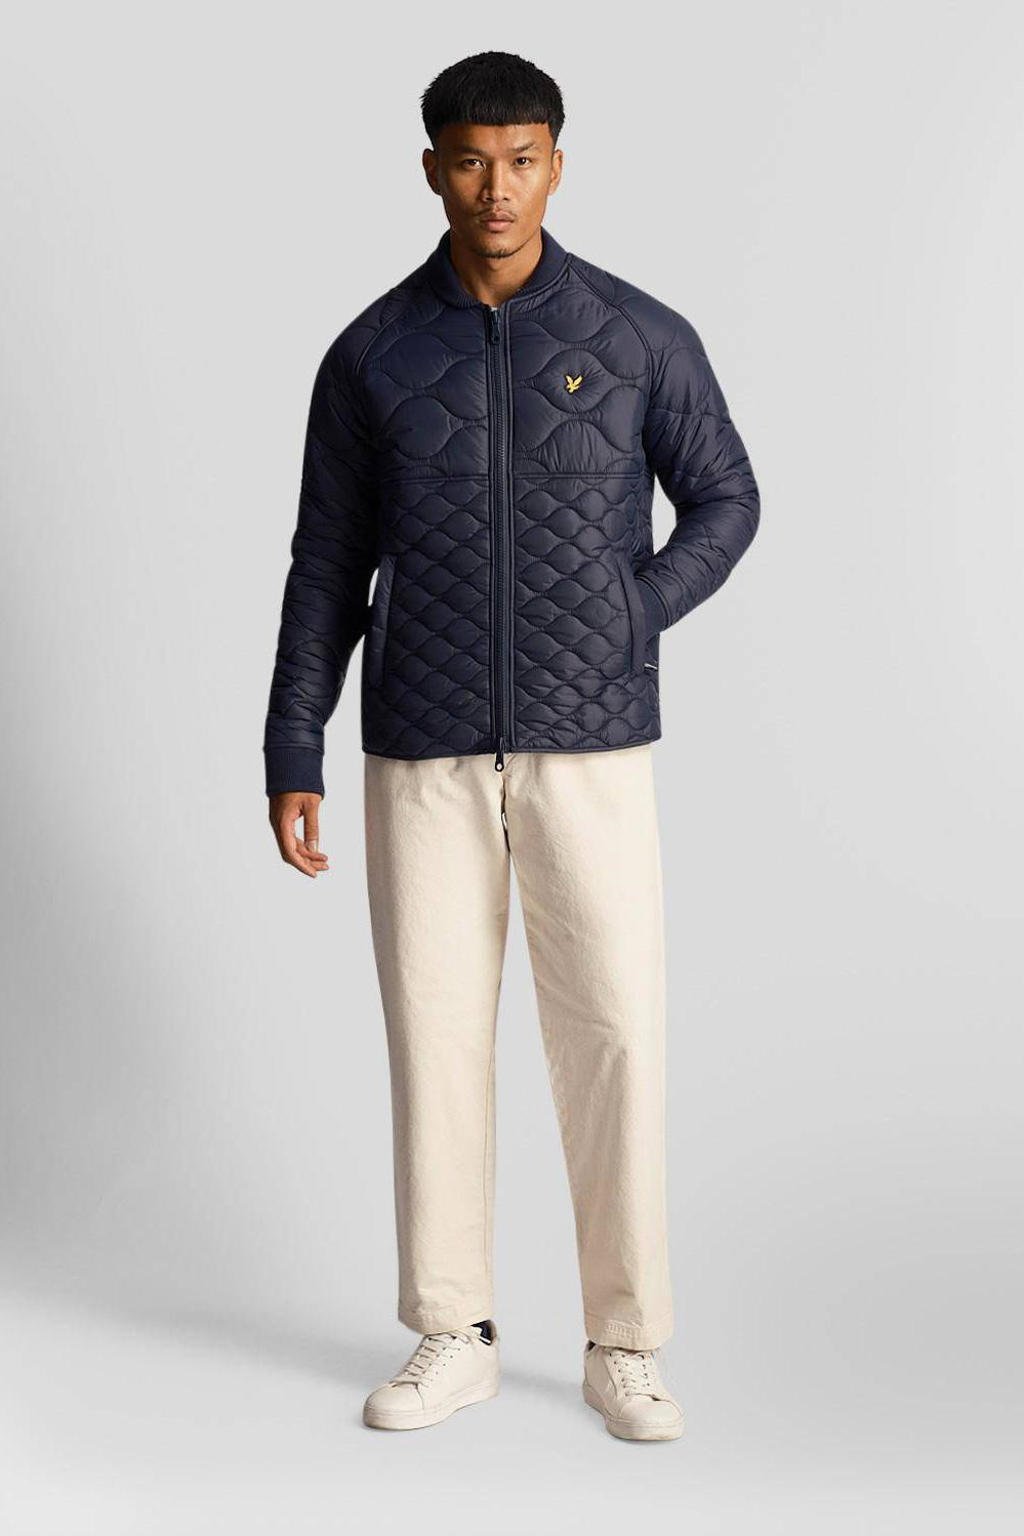 Marineblauwe heren Lyle & Scott gewatteerde jas van nylon met logo dessin, lange mouwen, opstaande kraag, ritssluiting en doorgestikte details